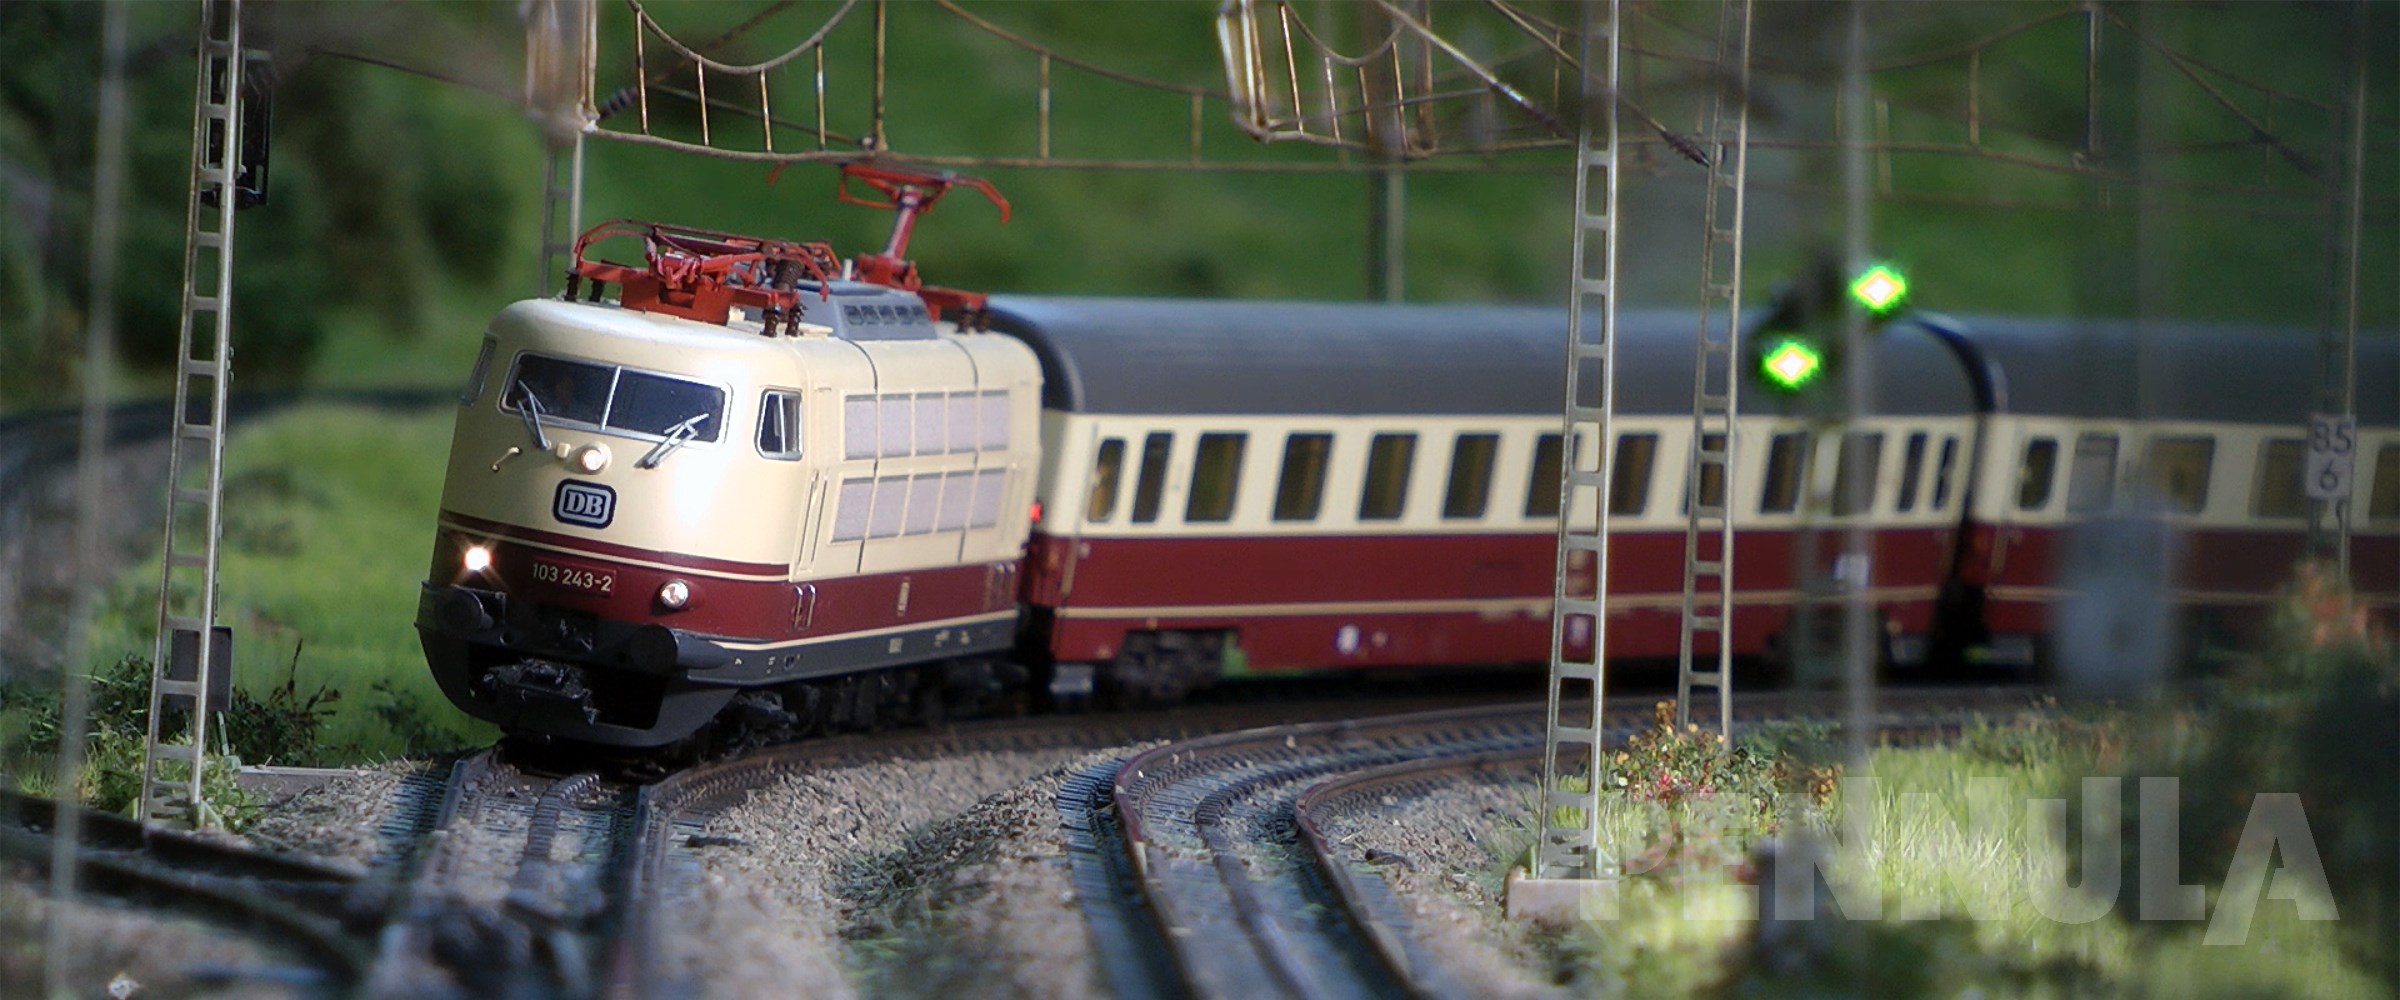 Märklin Modellzüge auf der traumhaften Modelleisenbahn Lindental